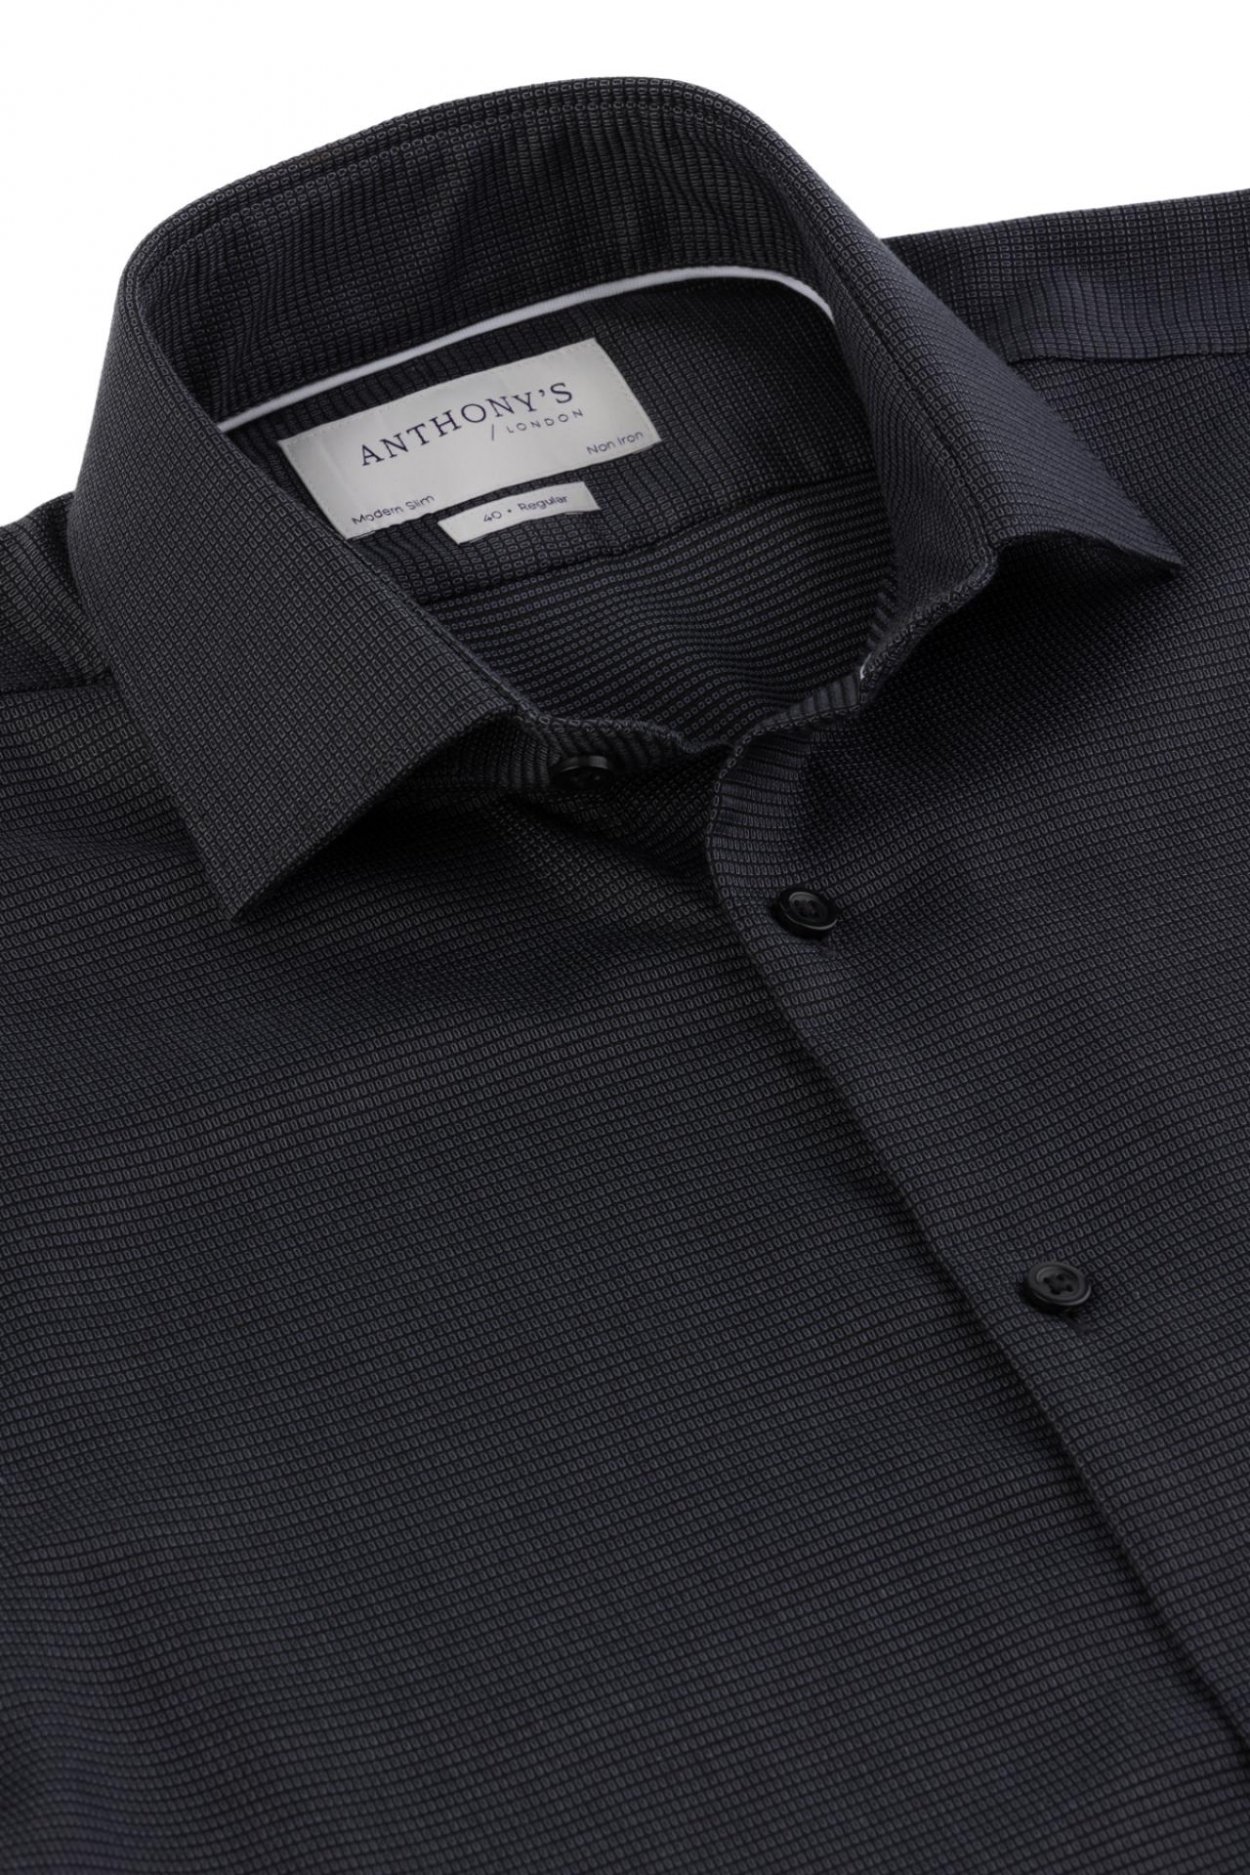 Pánská černošedá non-iron košile s jemným vzorem